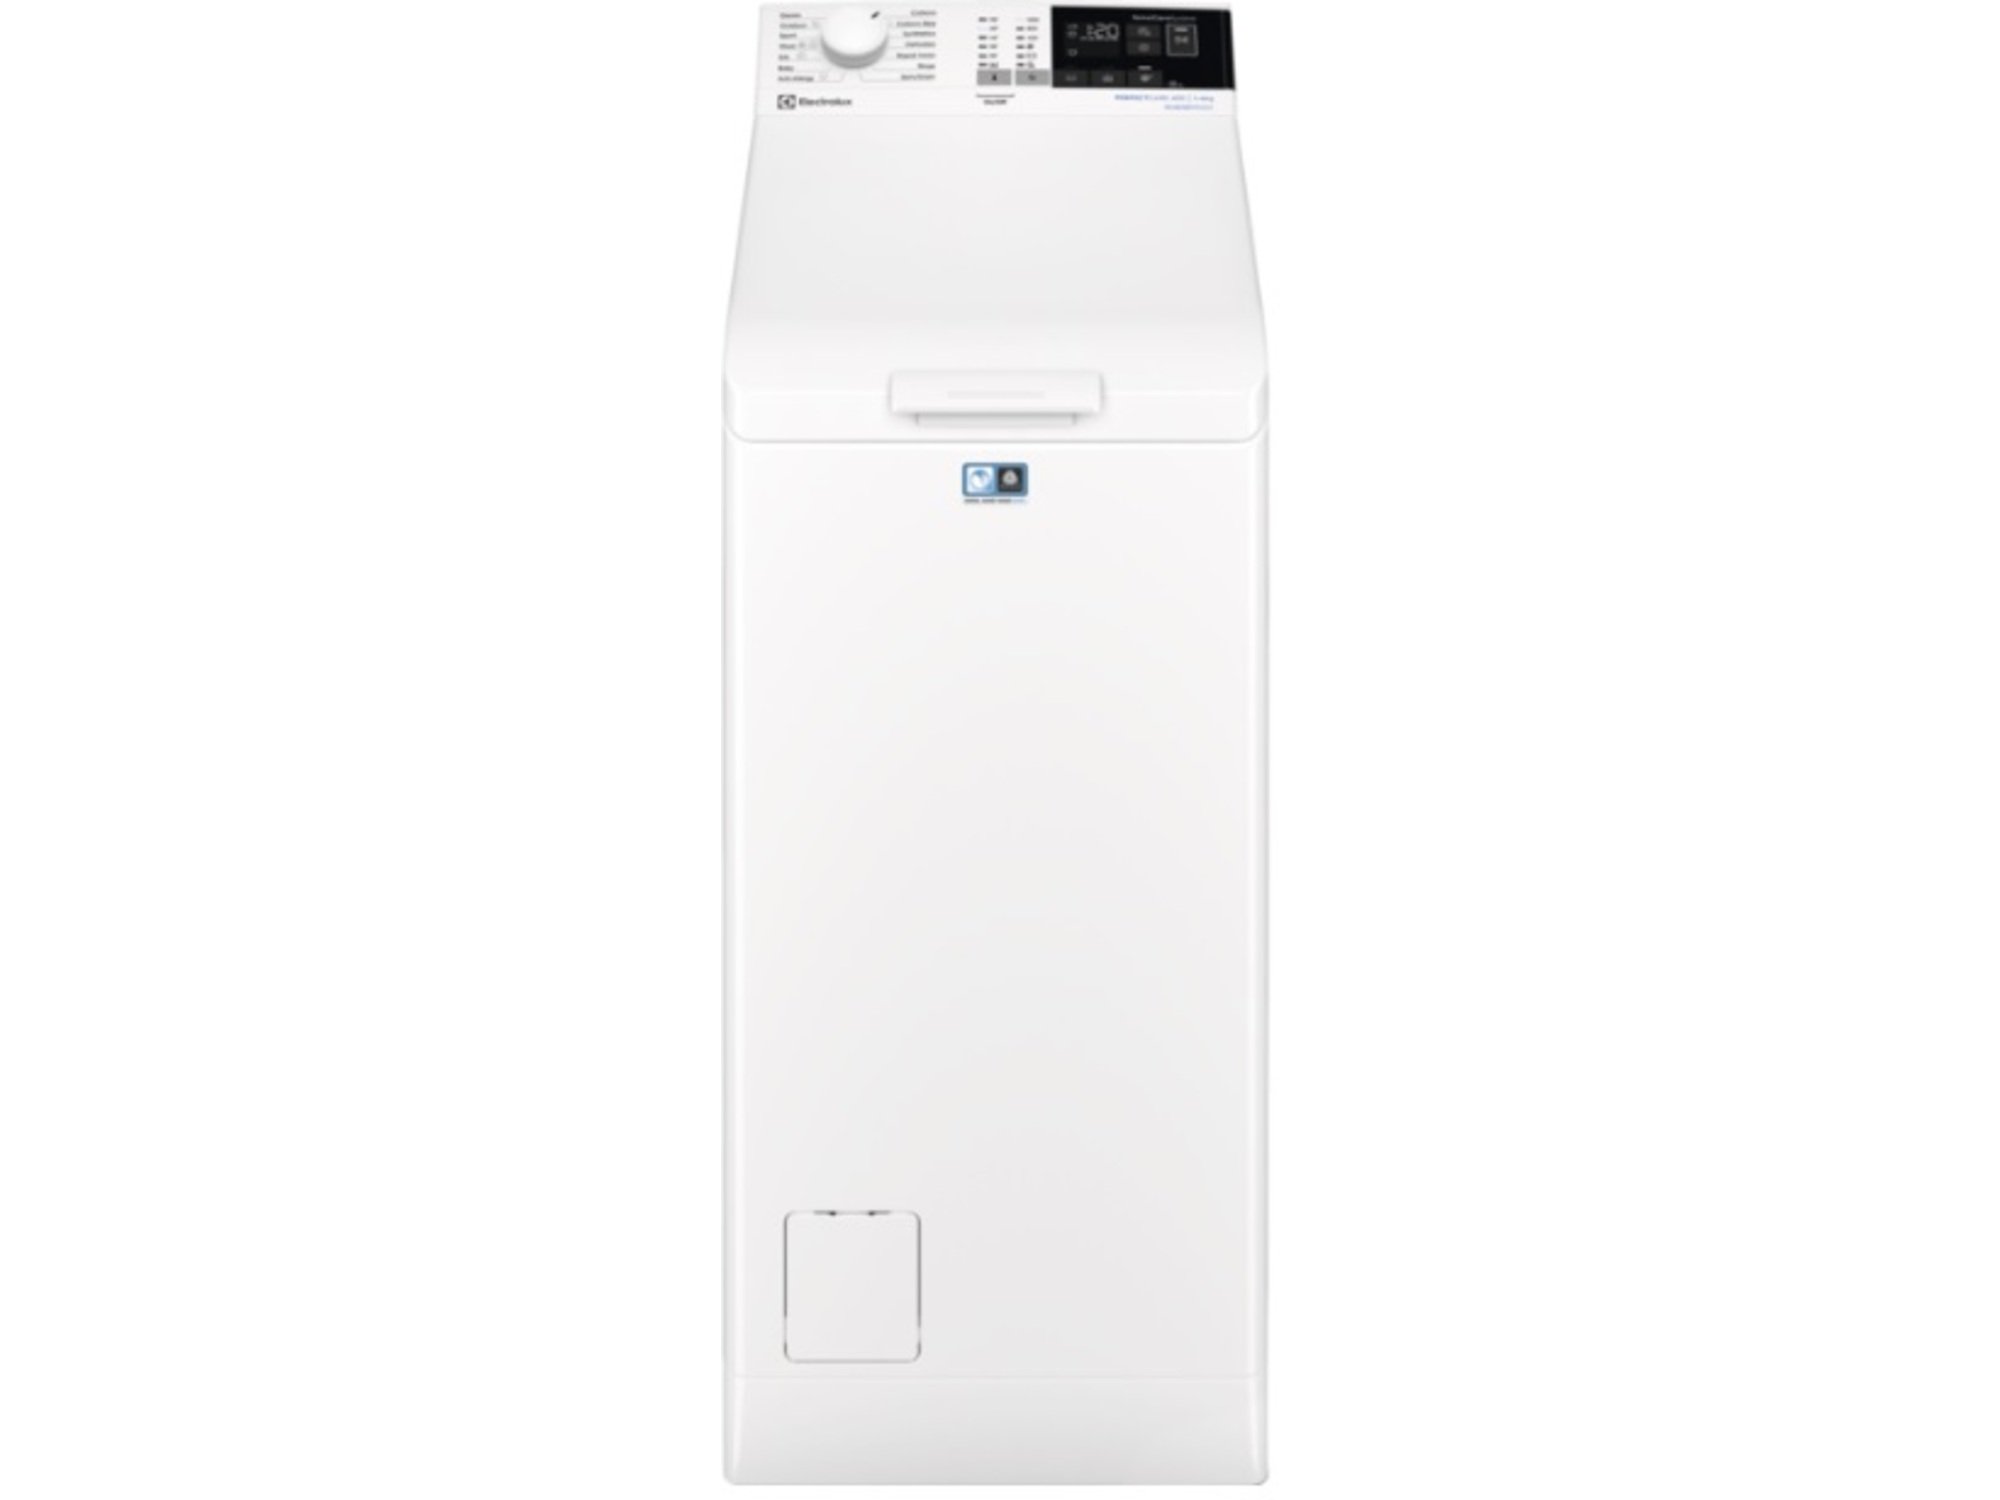 ELECTROLUX pralni stroj z zgornjim polnjenjem EW6T4272I, 7kg